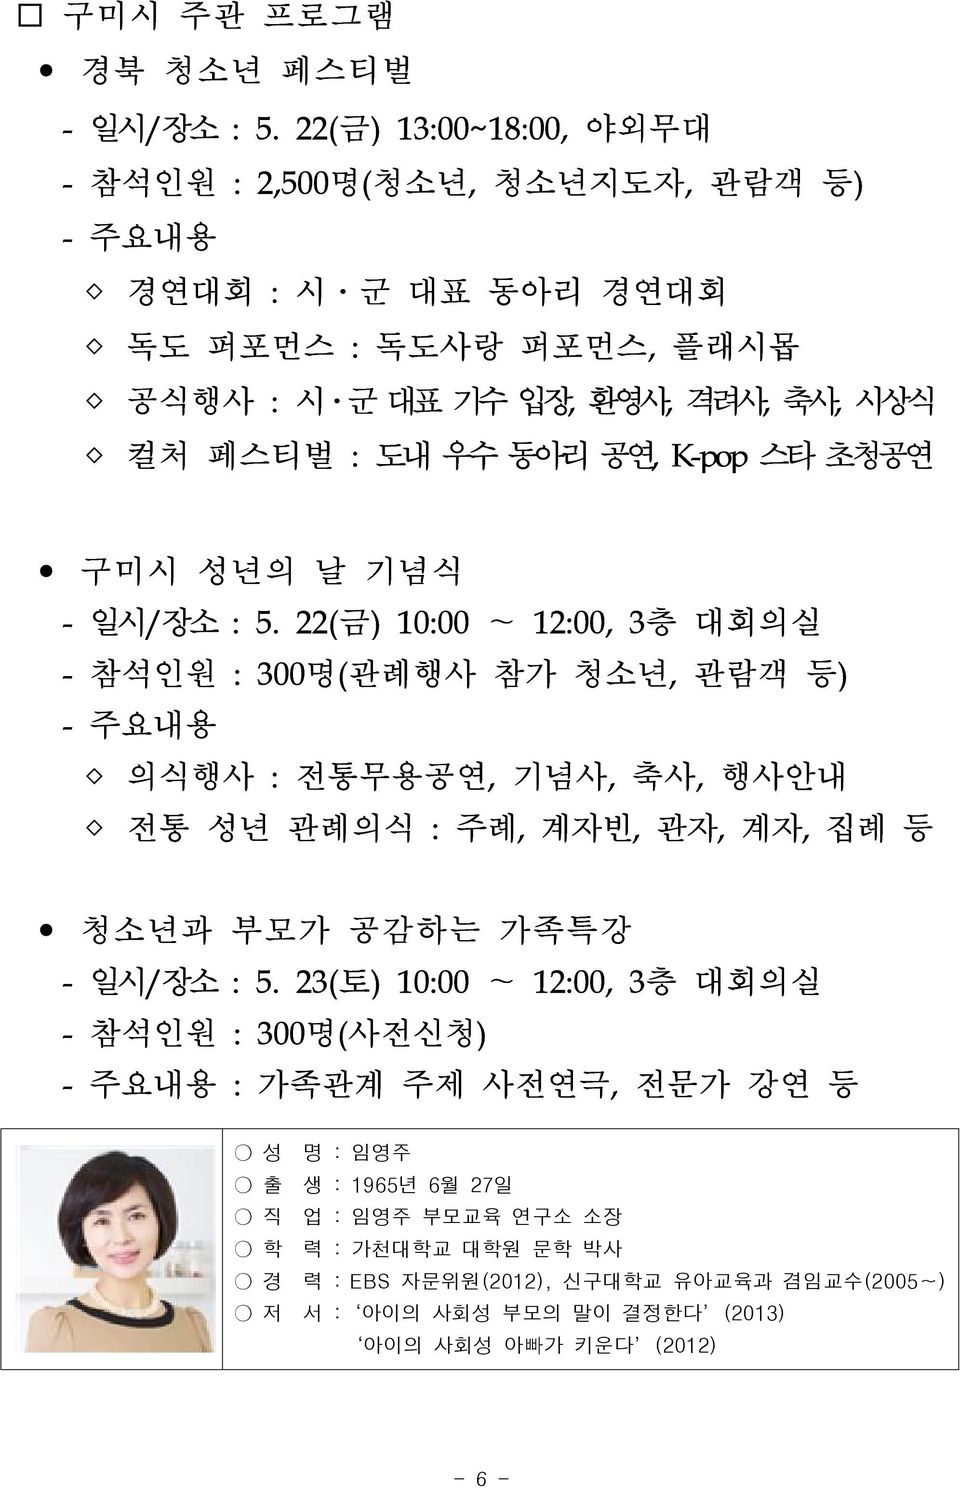 우수 동아리 공연, K-pop 스타 초청공연 구미시 성년의 날 기념식 - 일시/장소 : 5.